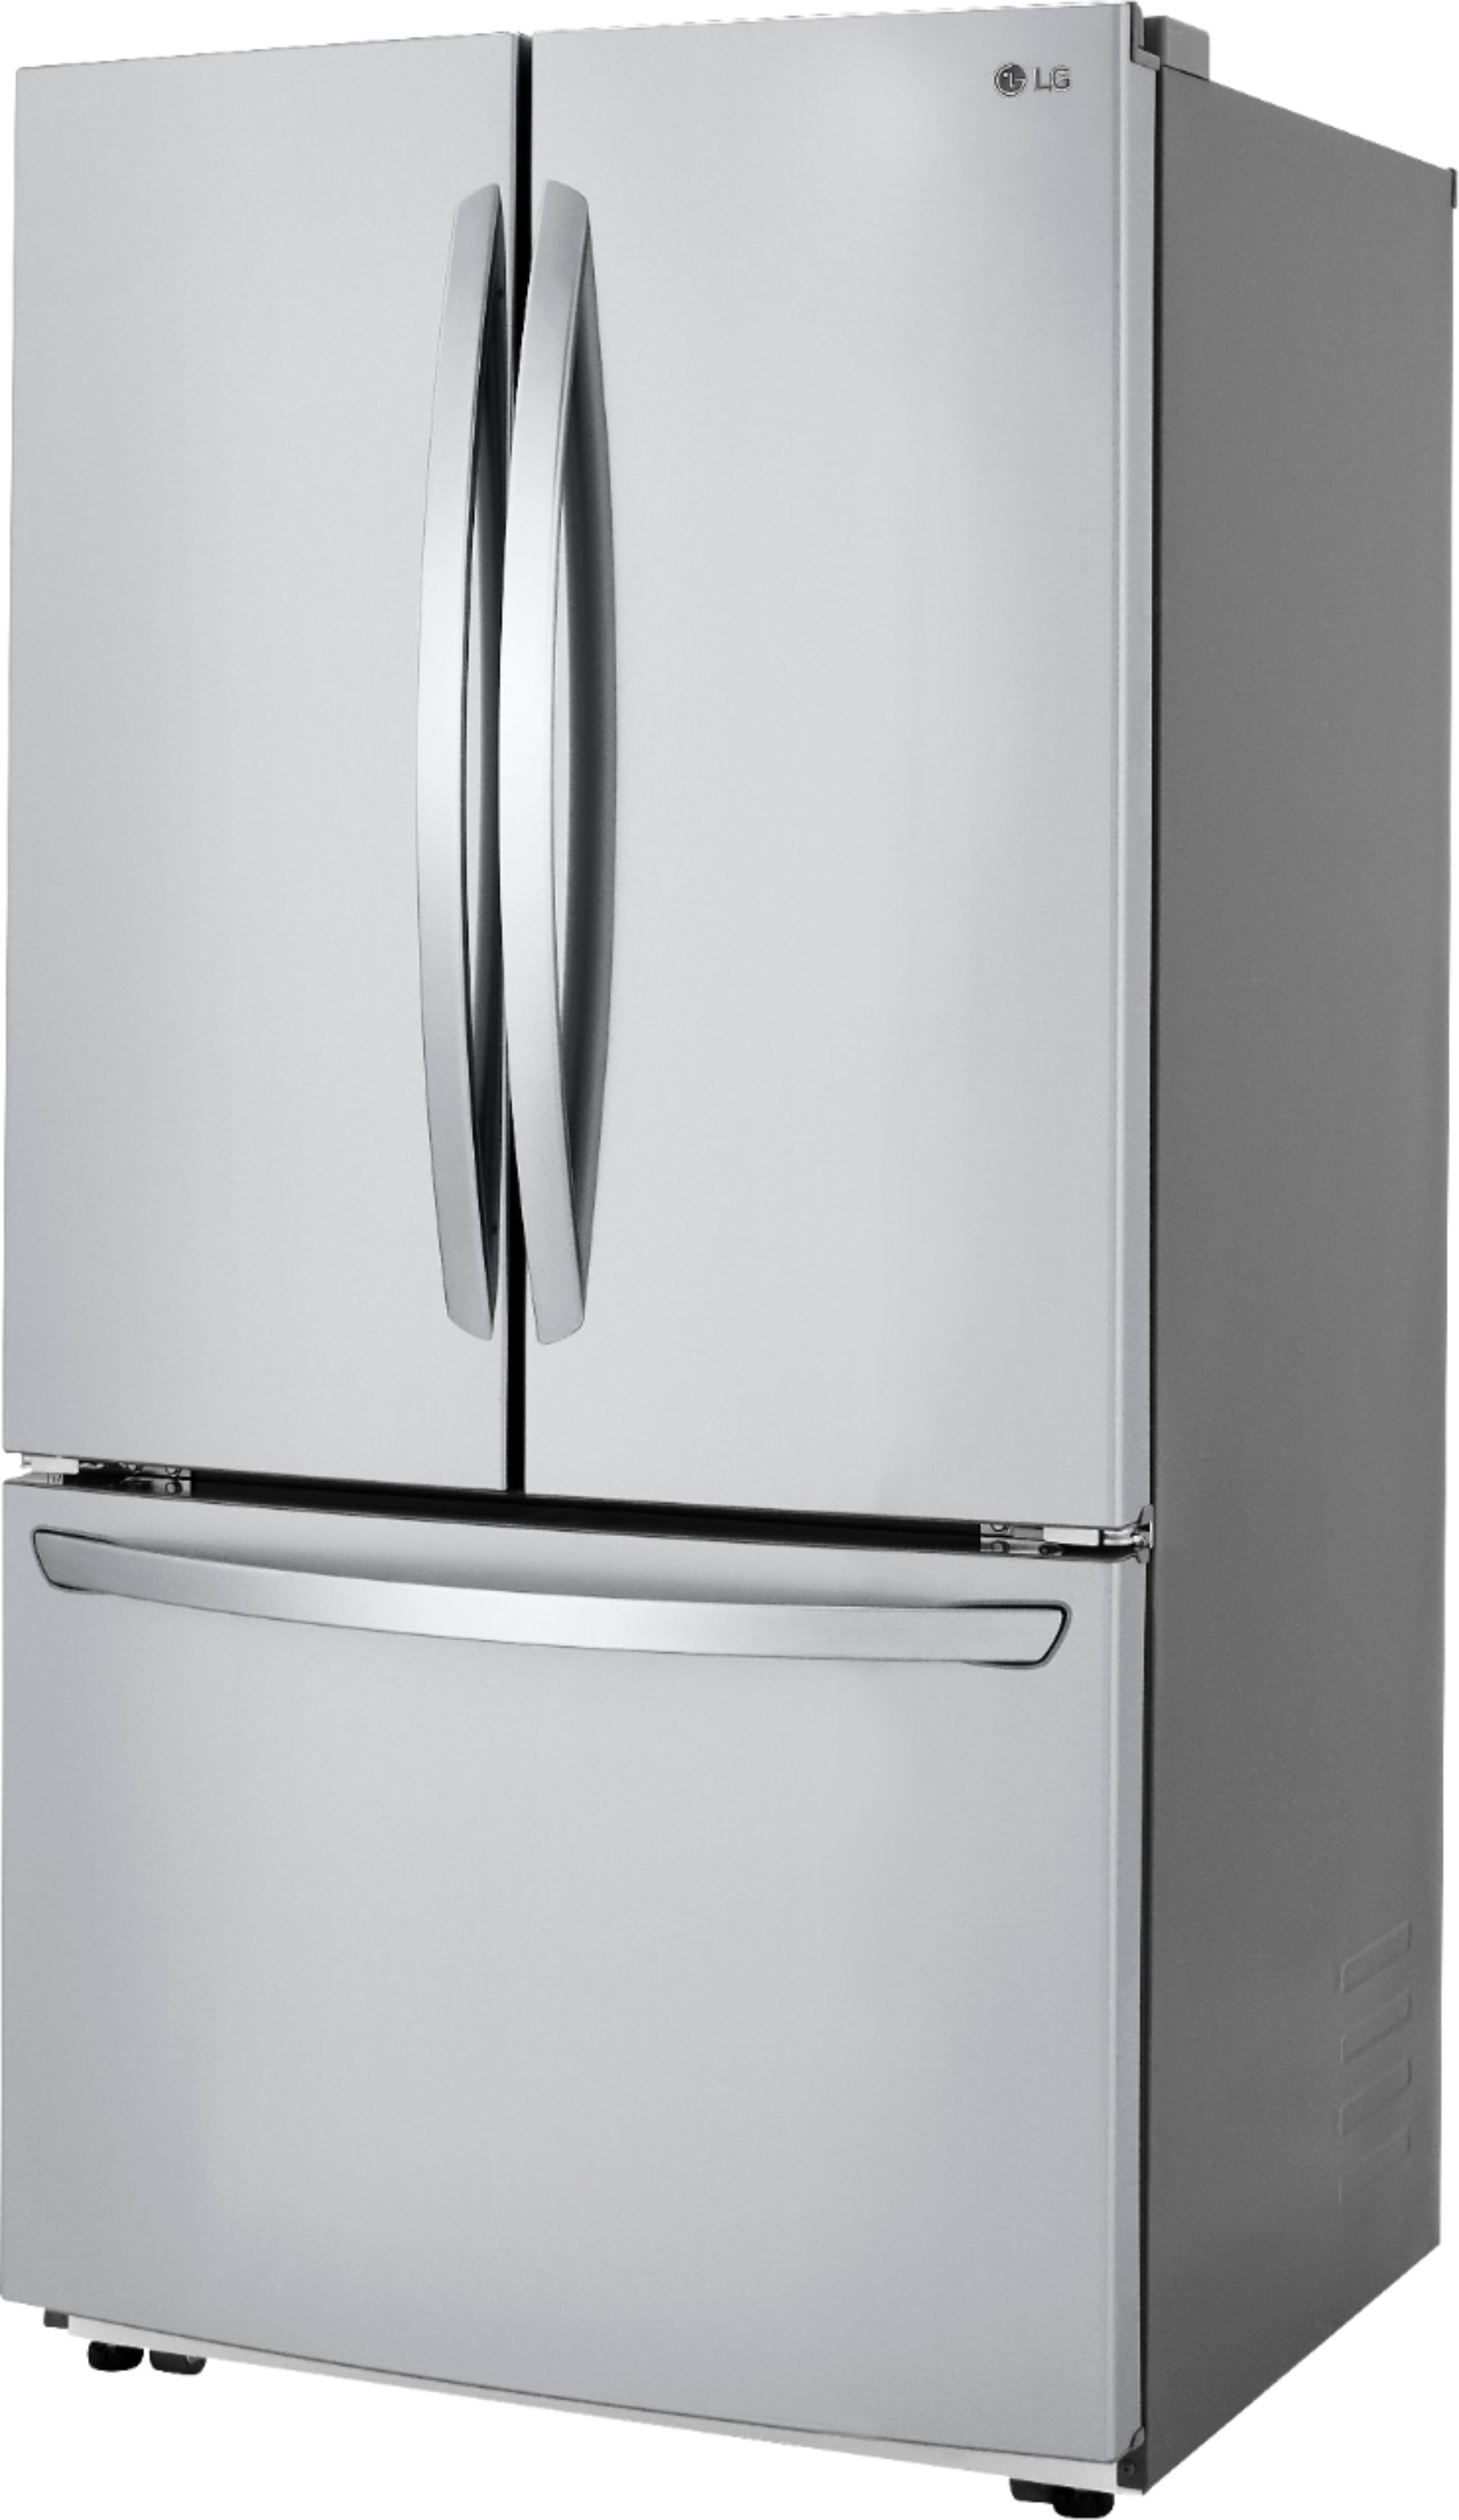 LG - 22.8 Cu. Ft. French Door Counter-Depth Refrigerator - Stainless Lg Counter Depth Stainless Steel Refrigerator